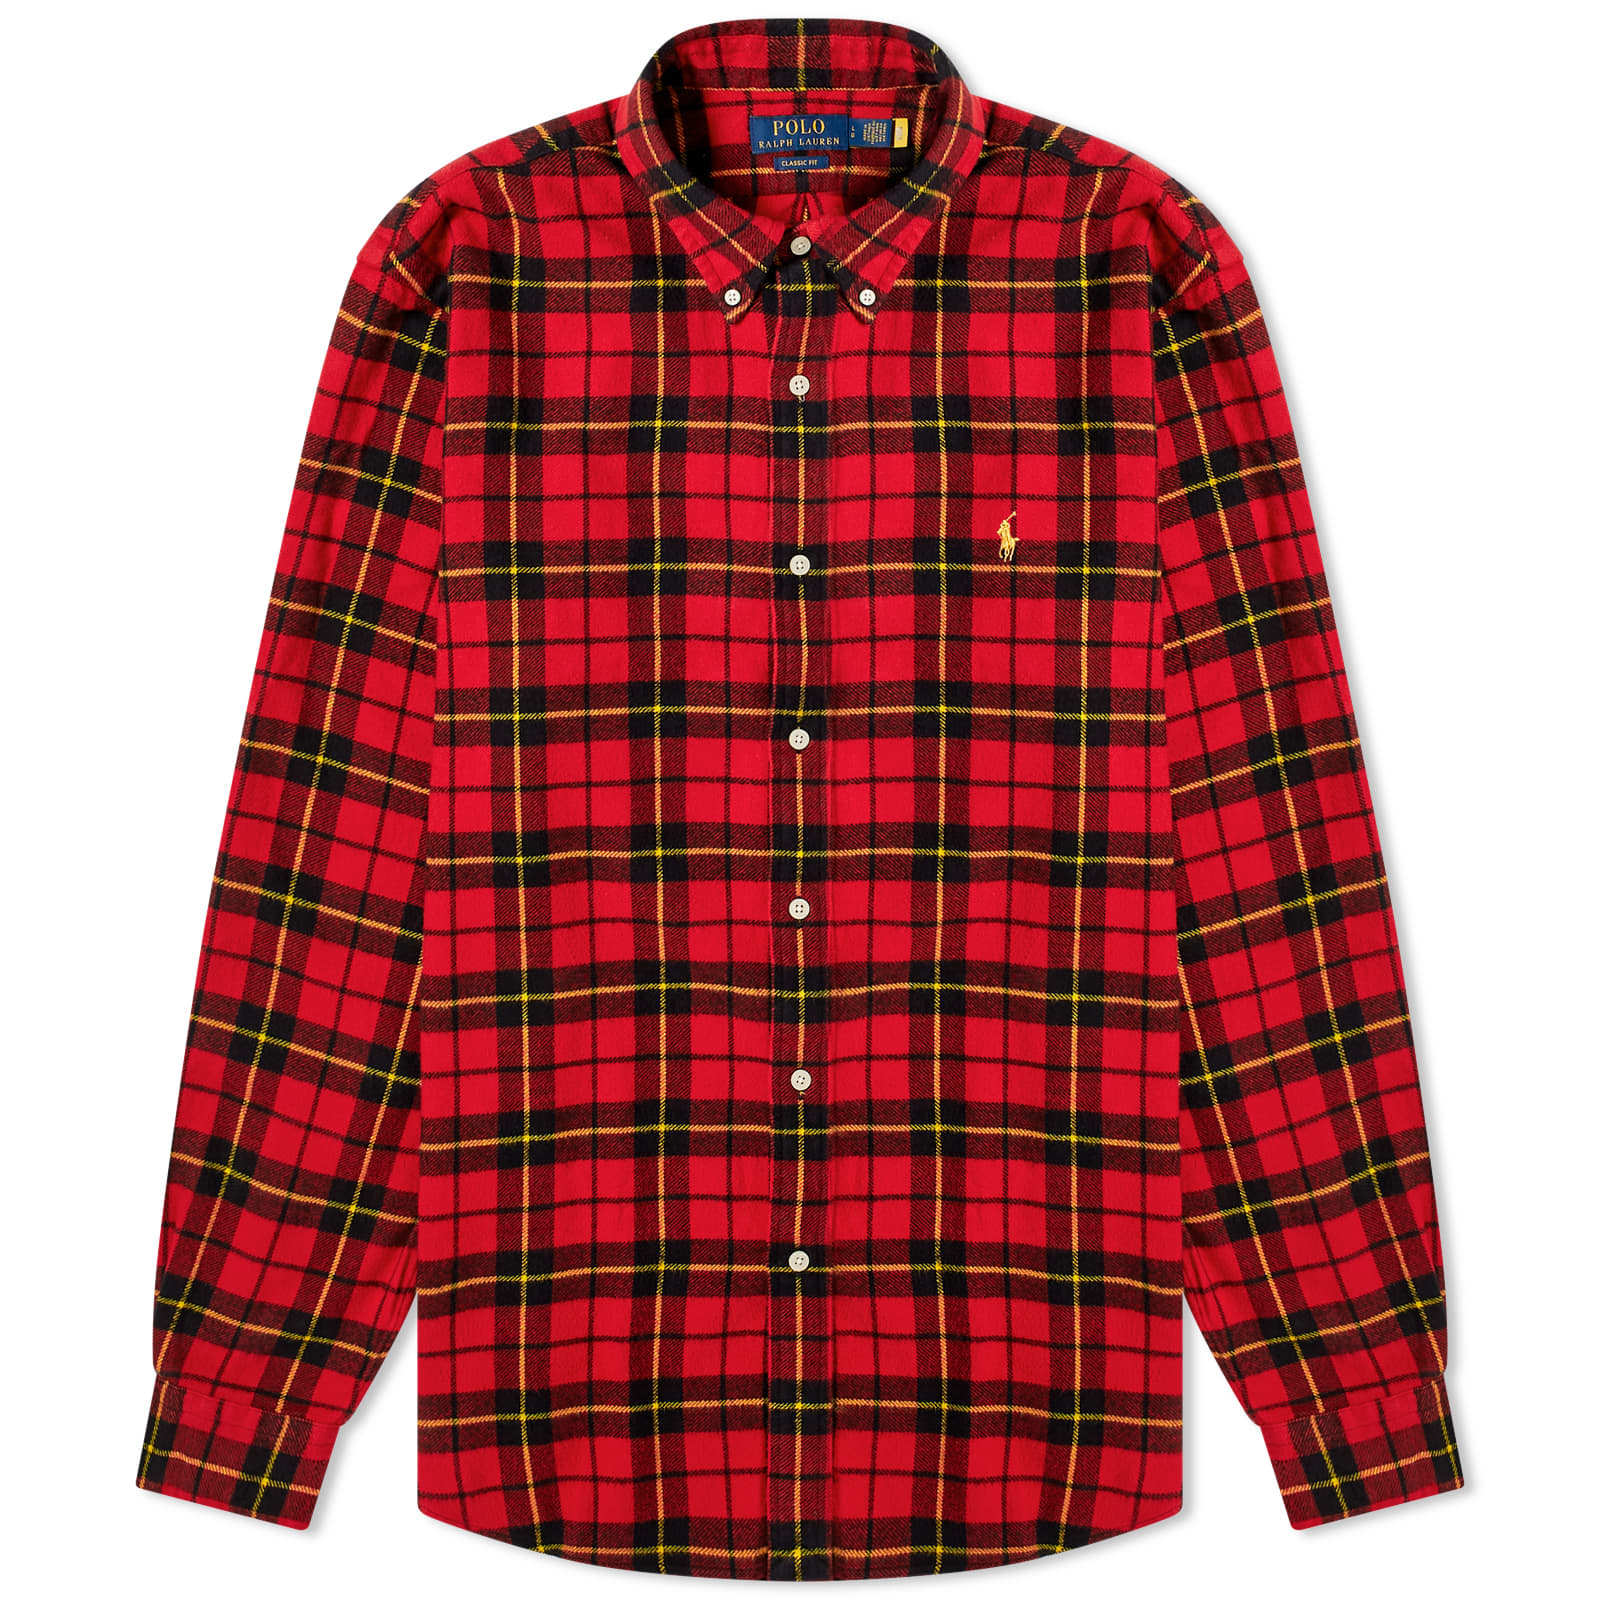 Рубашка Polo Ralph Lauren Check Flannel, цвет Red & Black Multi рубашка aape check flannel цвет black brown